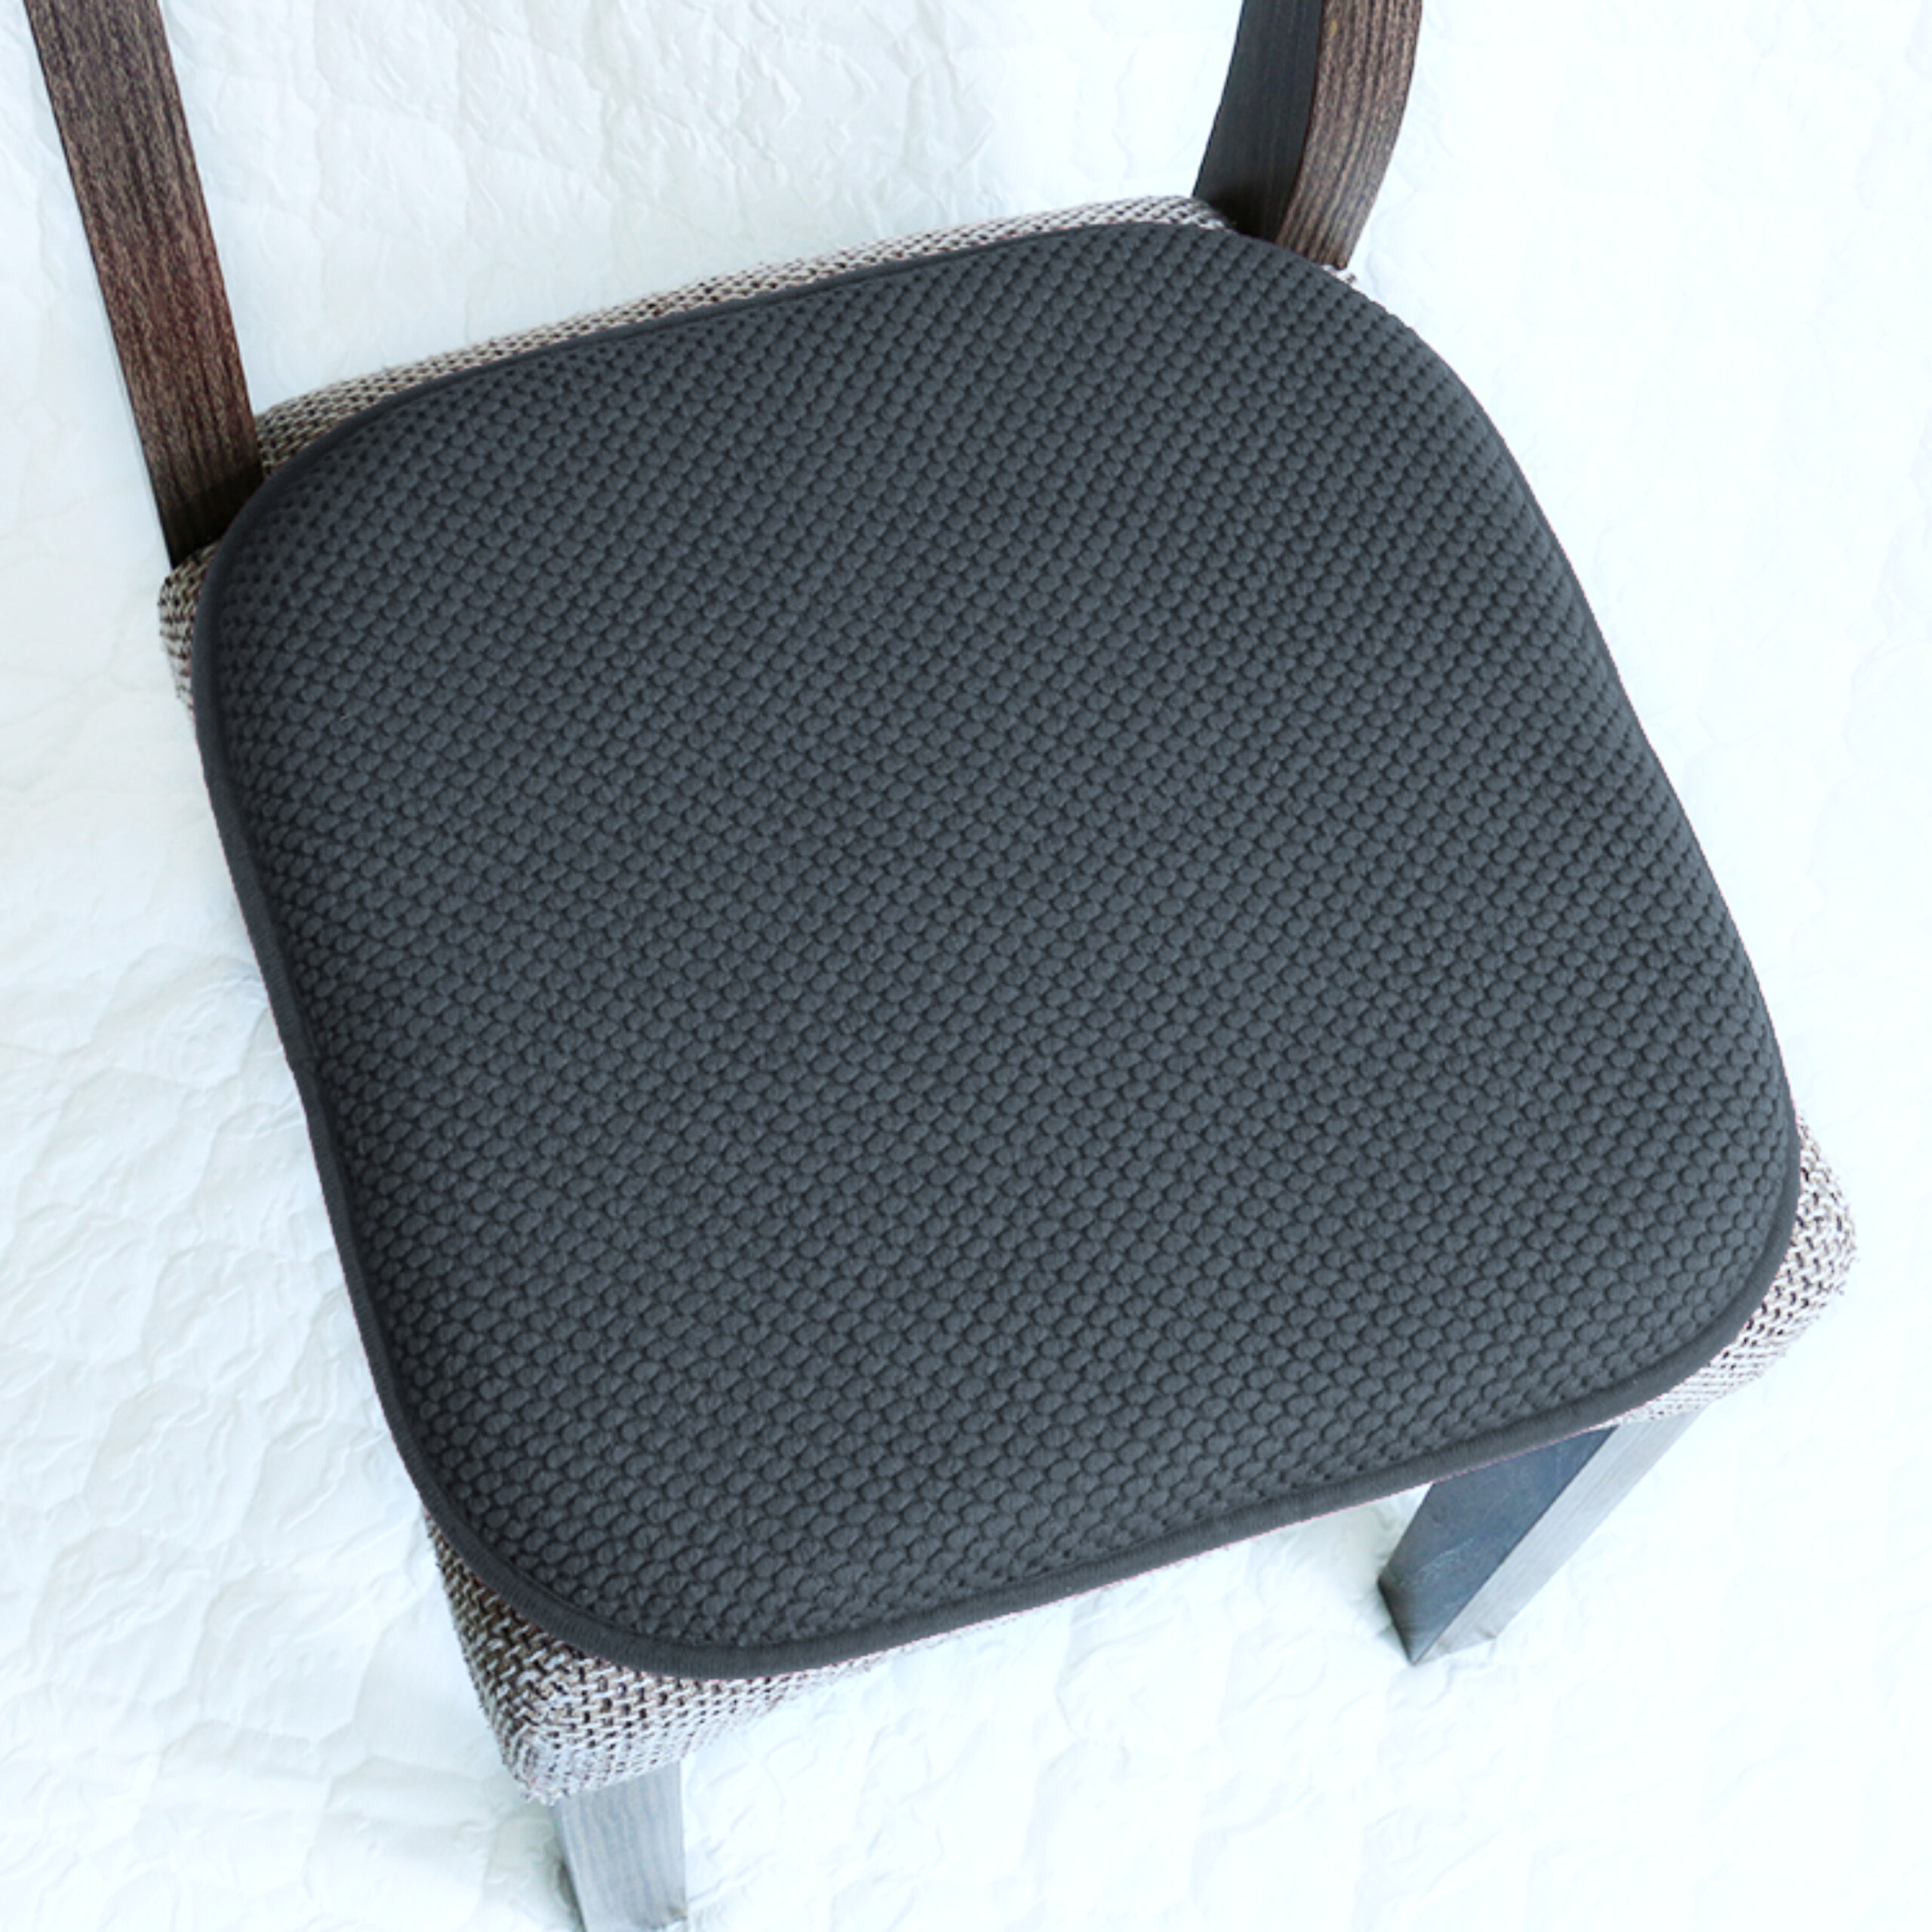 Premium Chair Cushions Memory Foam Chair Pads 2 Pack - 16x16 Inch